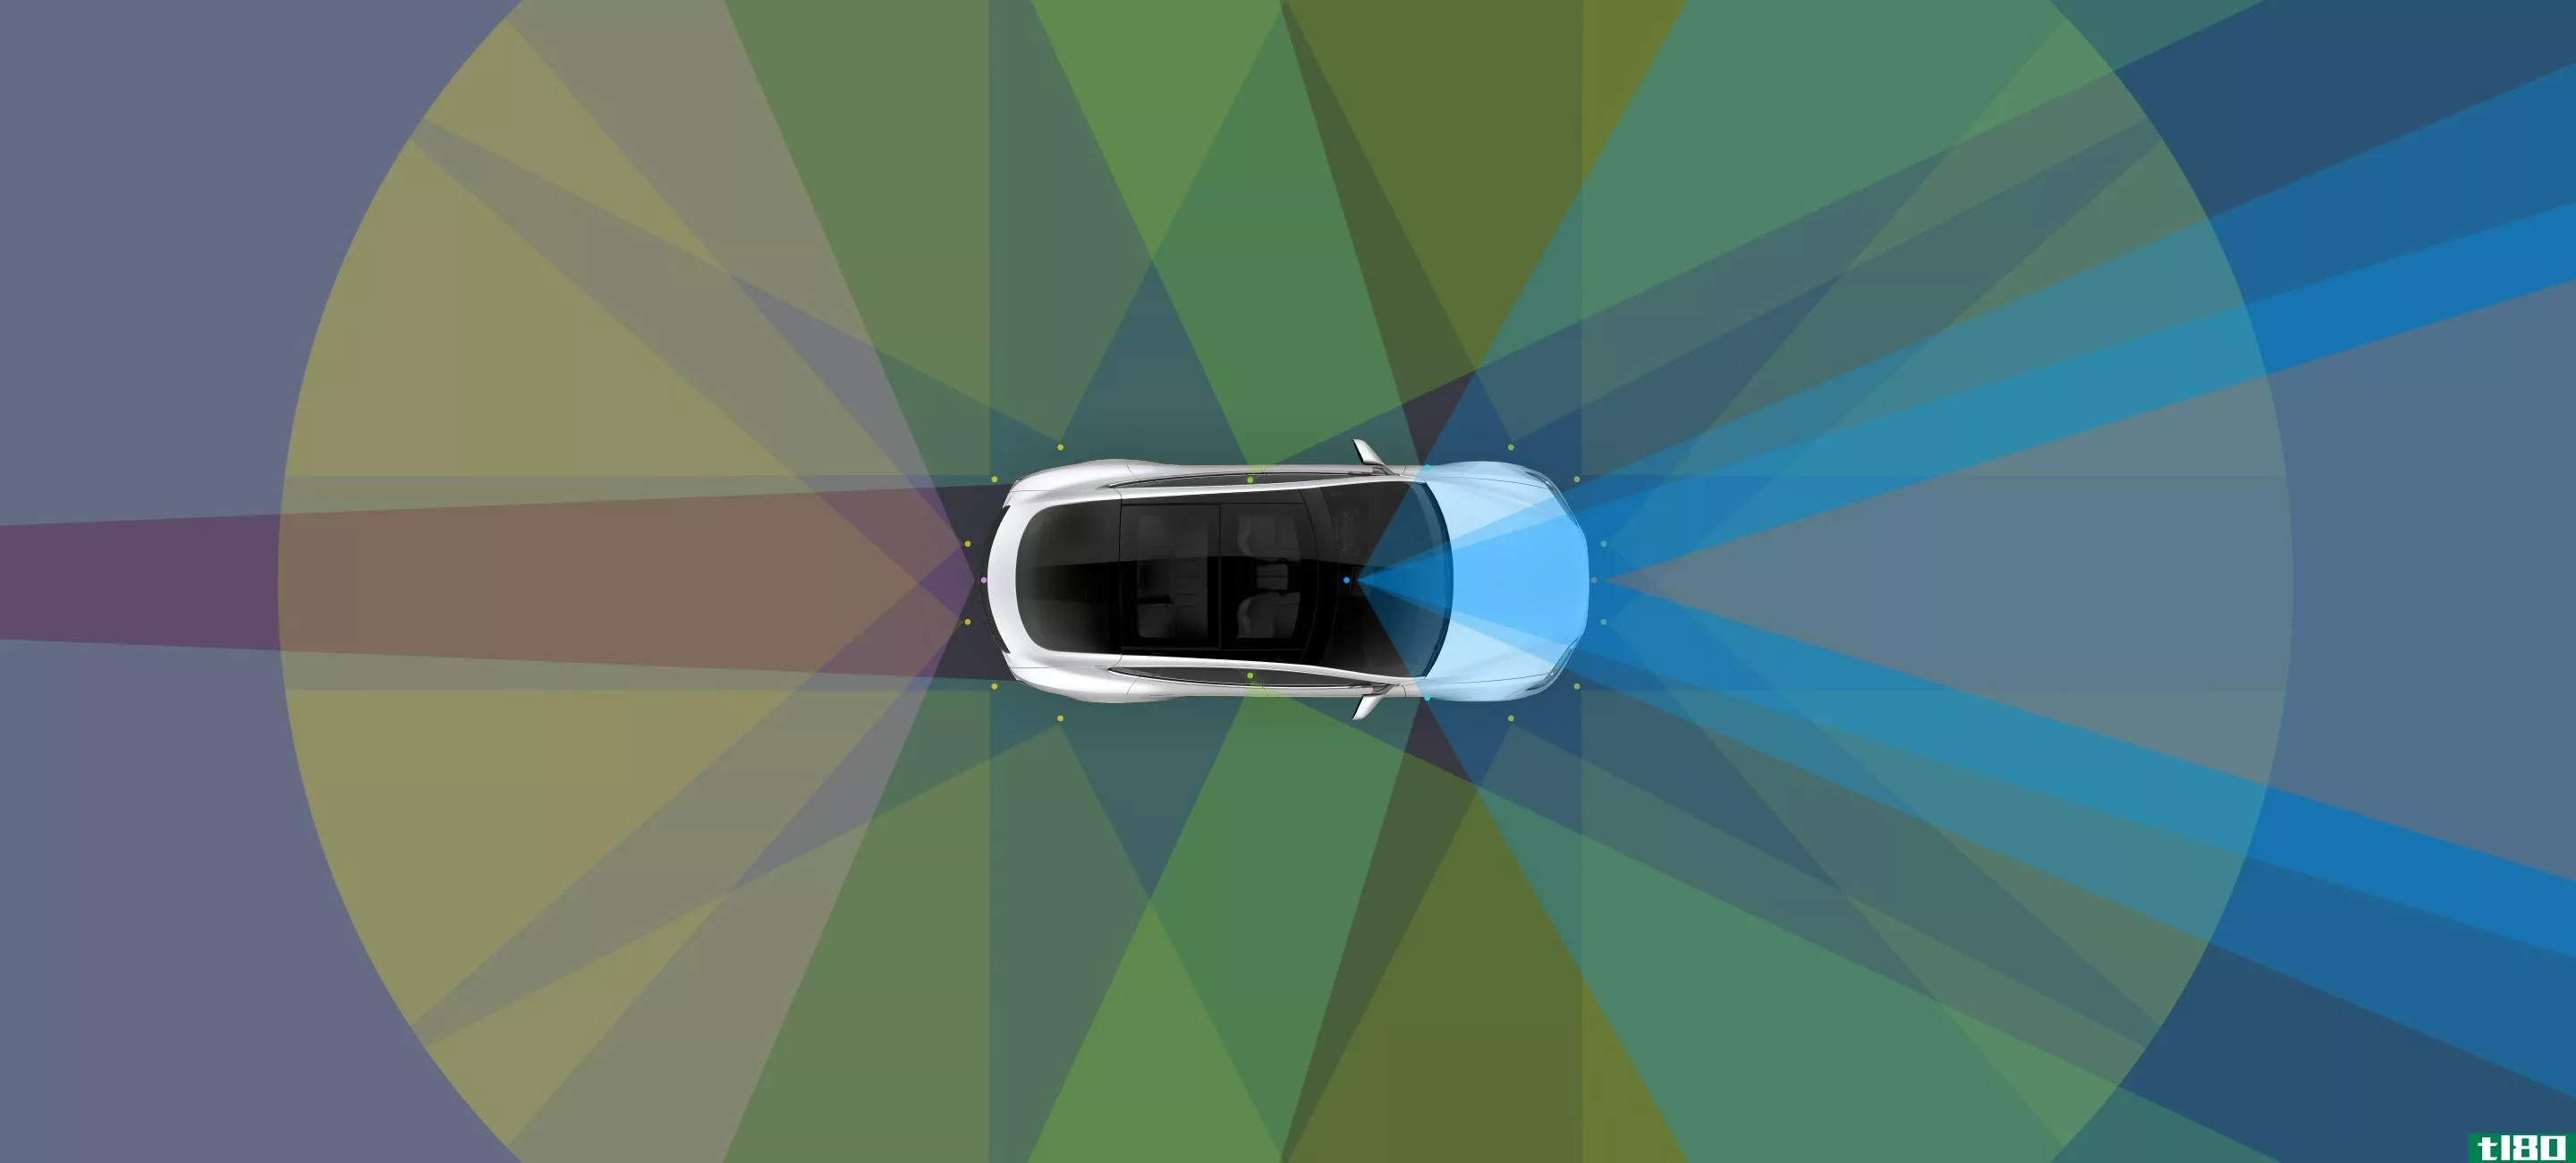 你能认出特斯拉s型车上的自动驾驶摄像头吗？